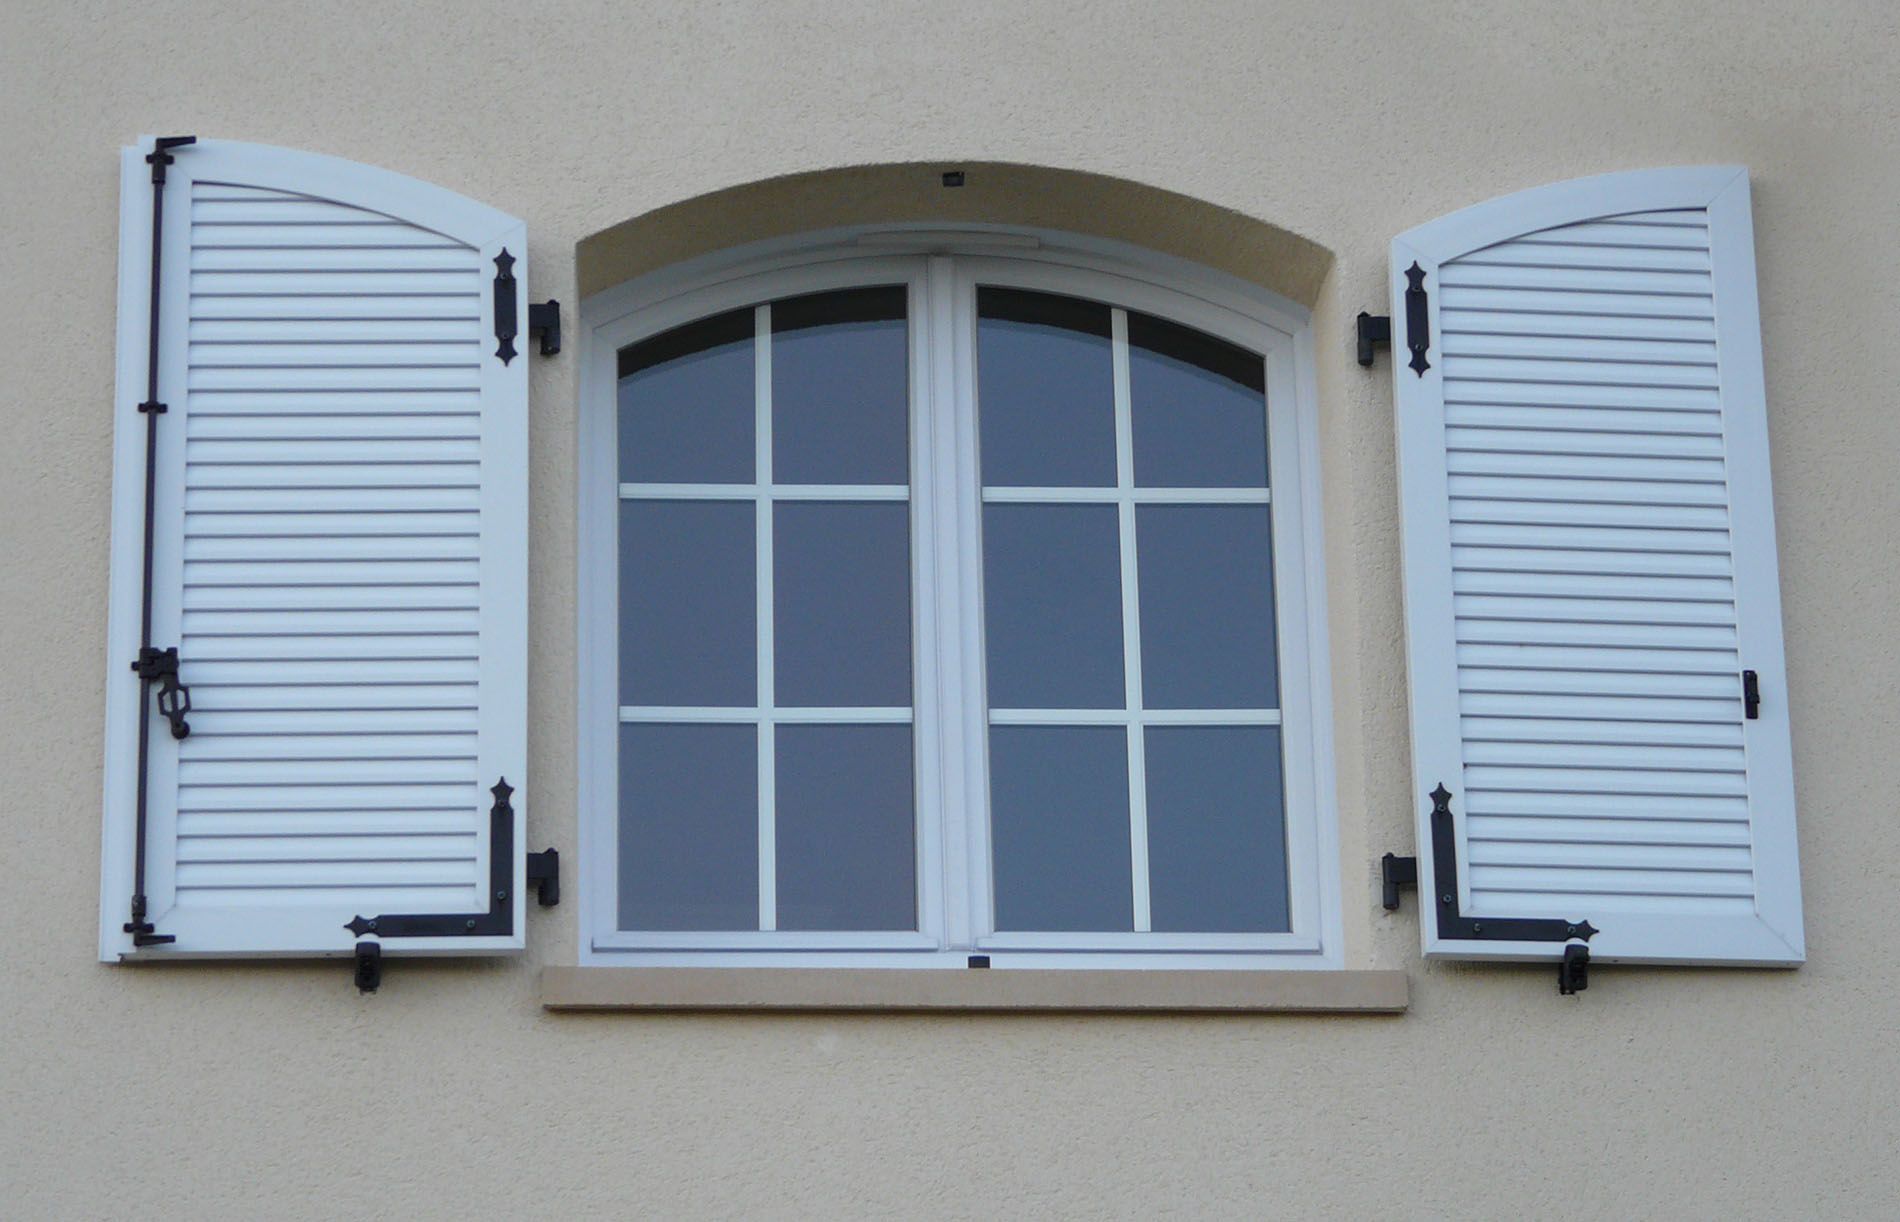 Une fenêtre arrondie avec des volets en bois